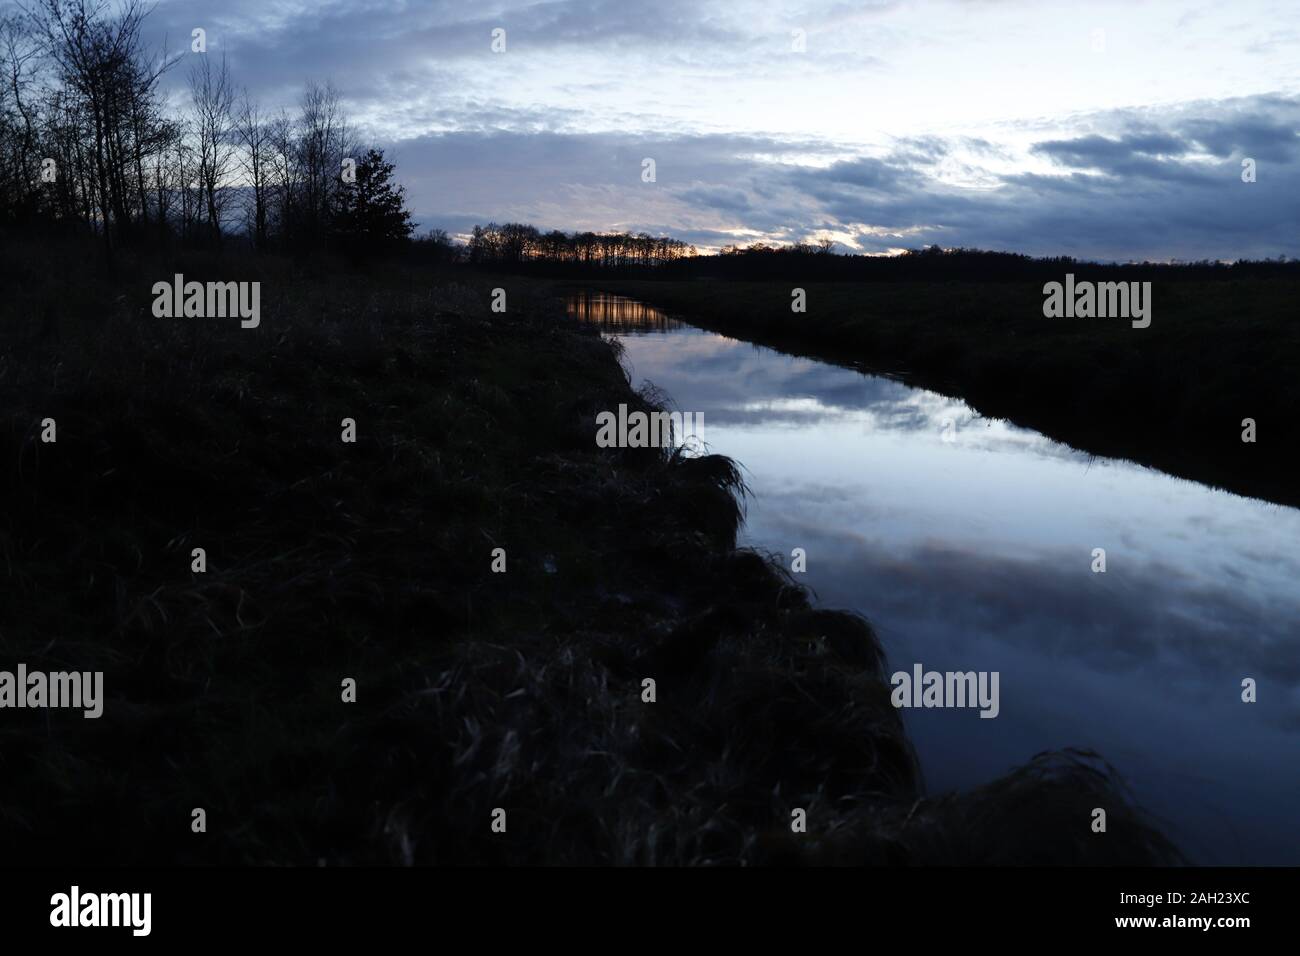 Mittelradde, Ahmsen, Lahn, Fluss Dämmerung, Dezember, Spiegelung, Wasser, Moor Stockfoto